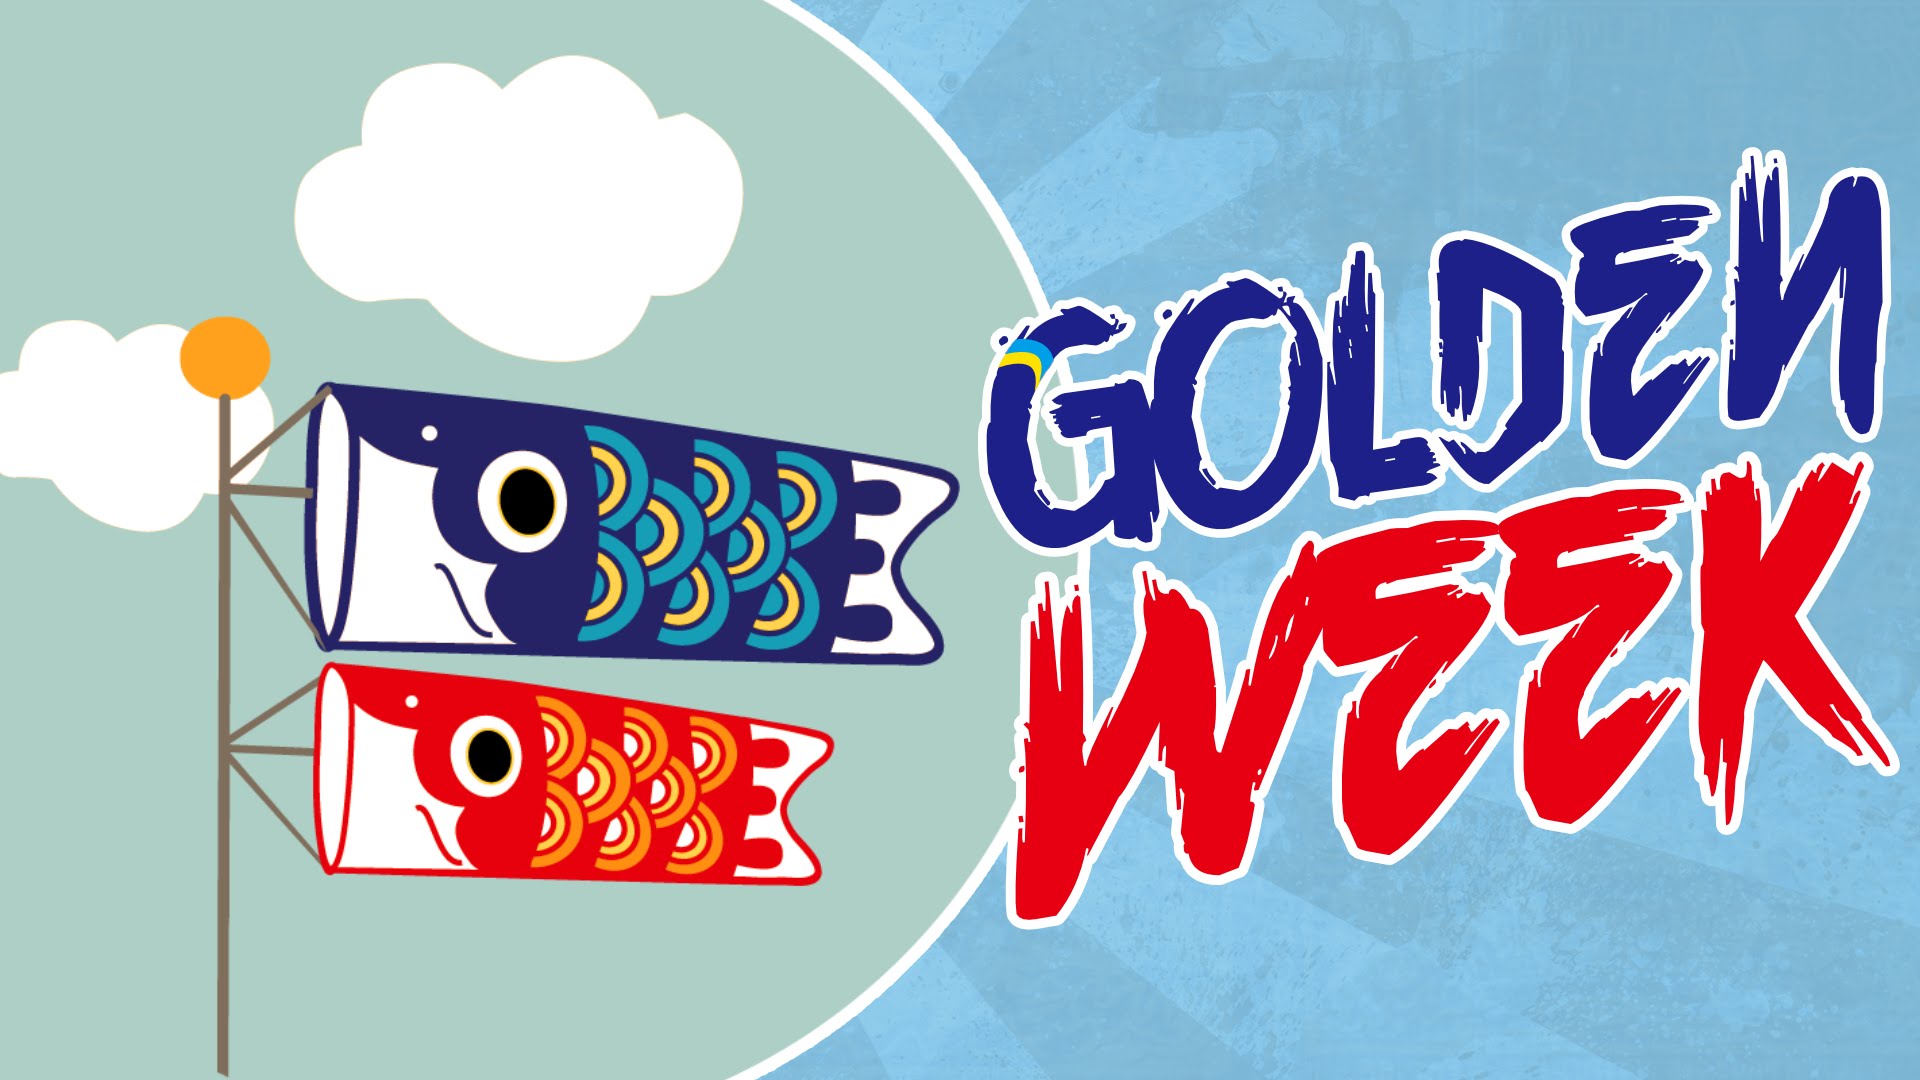 “Golden Week” เทศกาลแห่งการท่องเที่ยวที่ชาวญี่ปุ่นโหยหา สำคัญอย่างไร